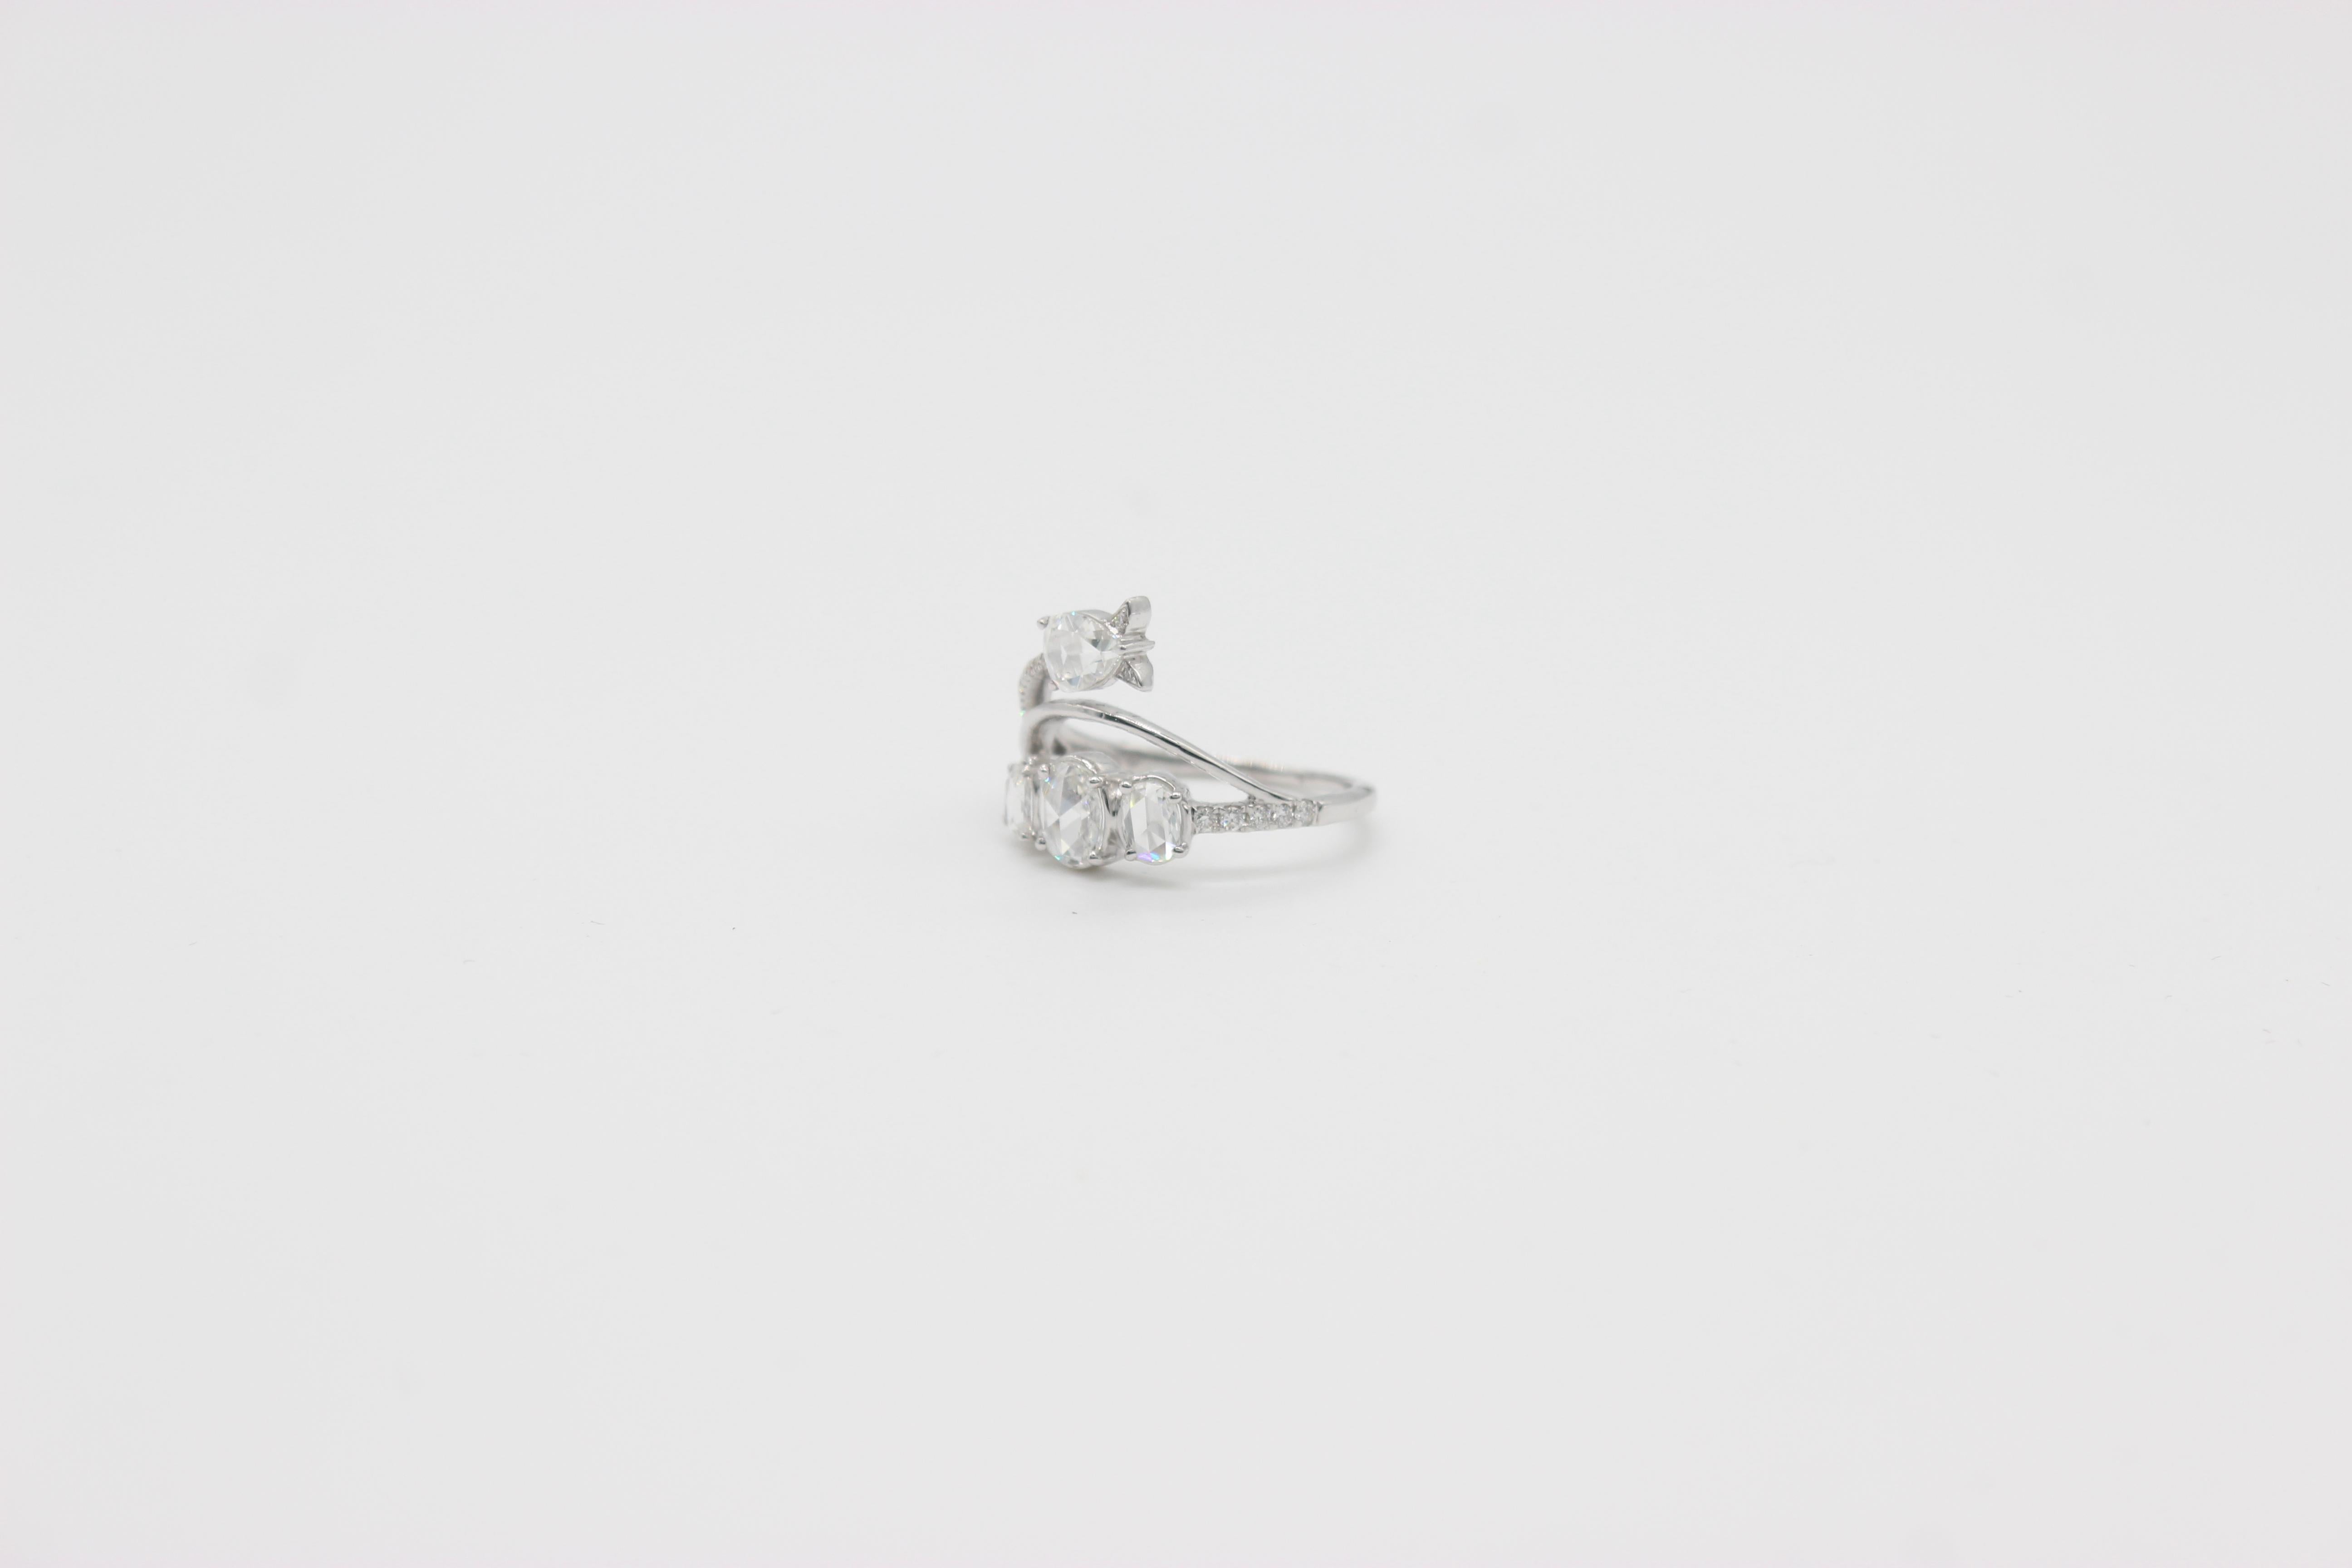 PANIM 1 ct Diamant Rosecut 18K Weißgold Cocktail Ring

Seit Generationen tragen die Menschen Ringe aus der Vergangenheit, der Gegenwart und der Zukunft als Symbol des Lebens und der ewigen Liebe. Diese Ringe sind so einzigartig und von Herzen